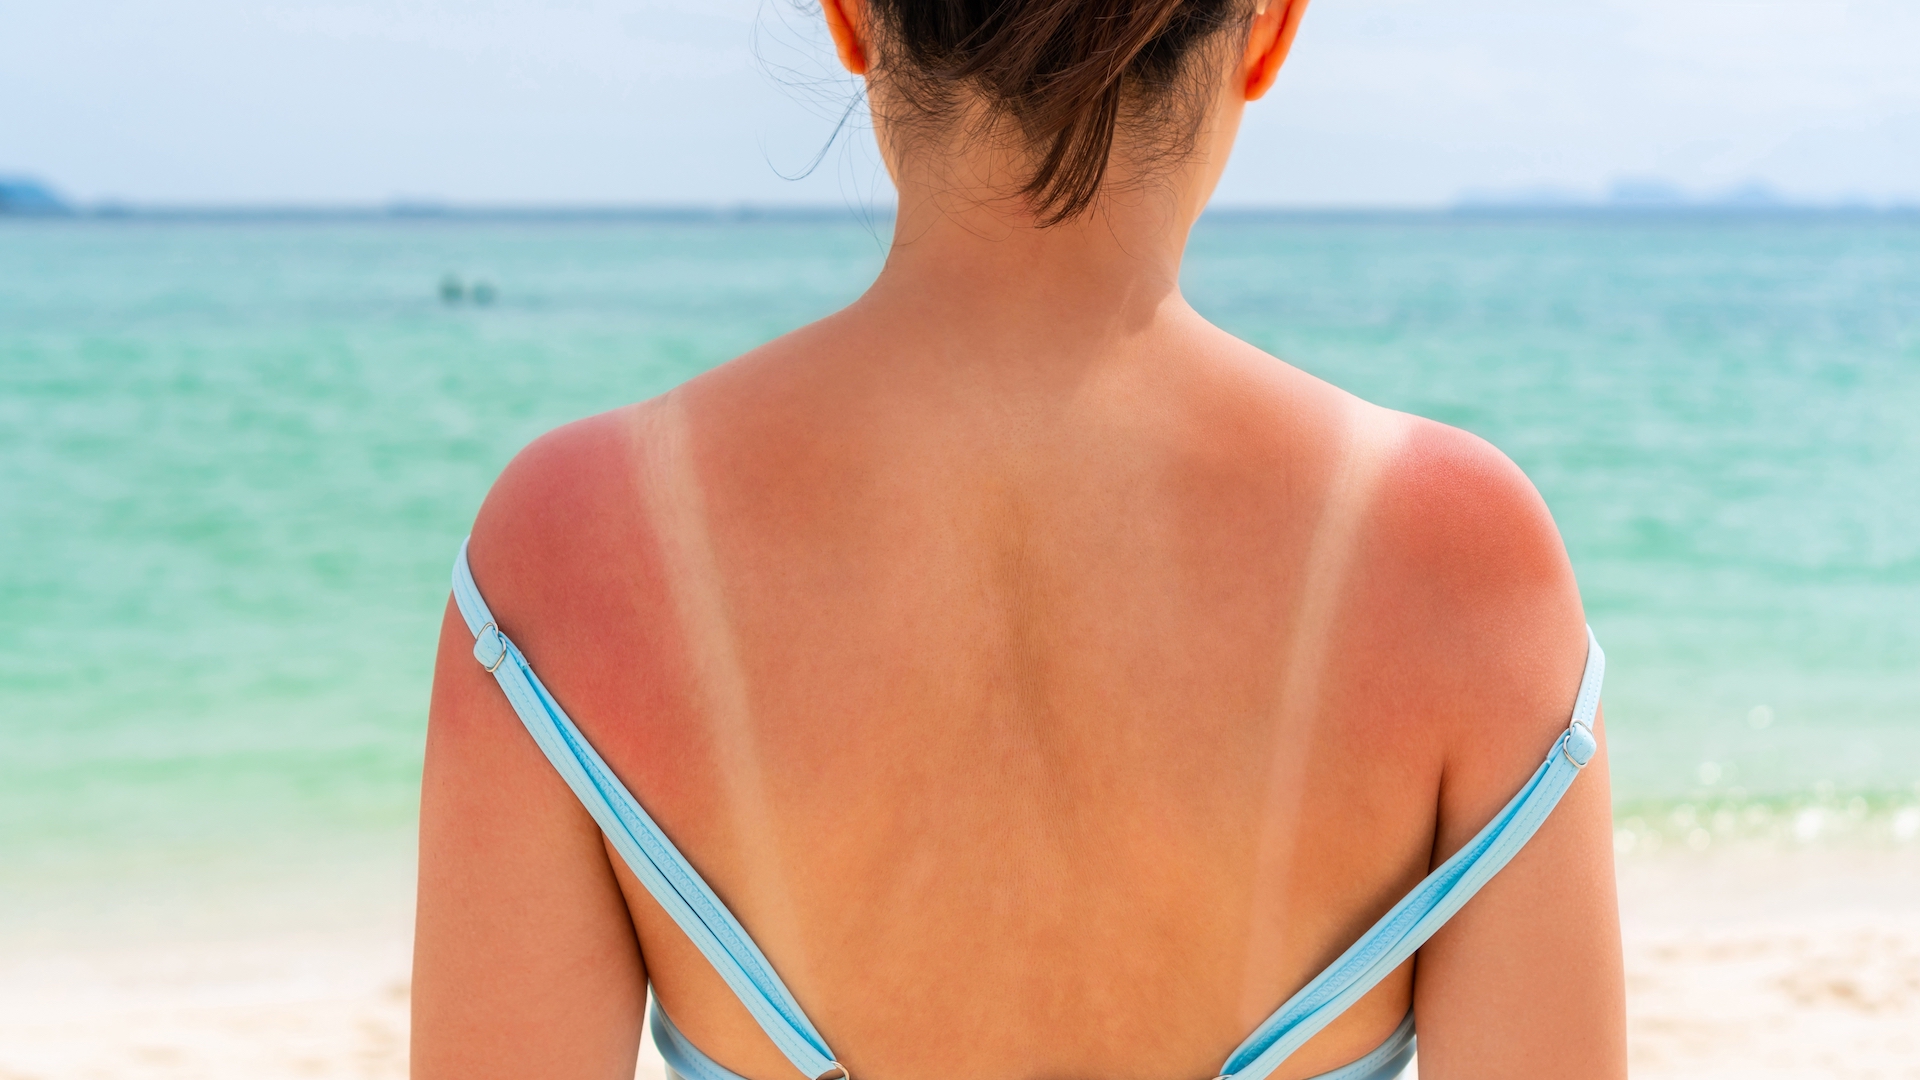 Uma fotografia de uma mulher com uma forte queimadura solar e marcas de bronzeado nas costas